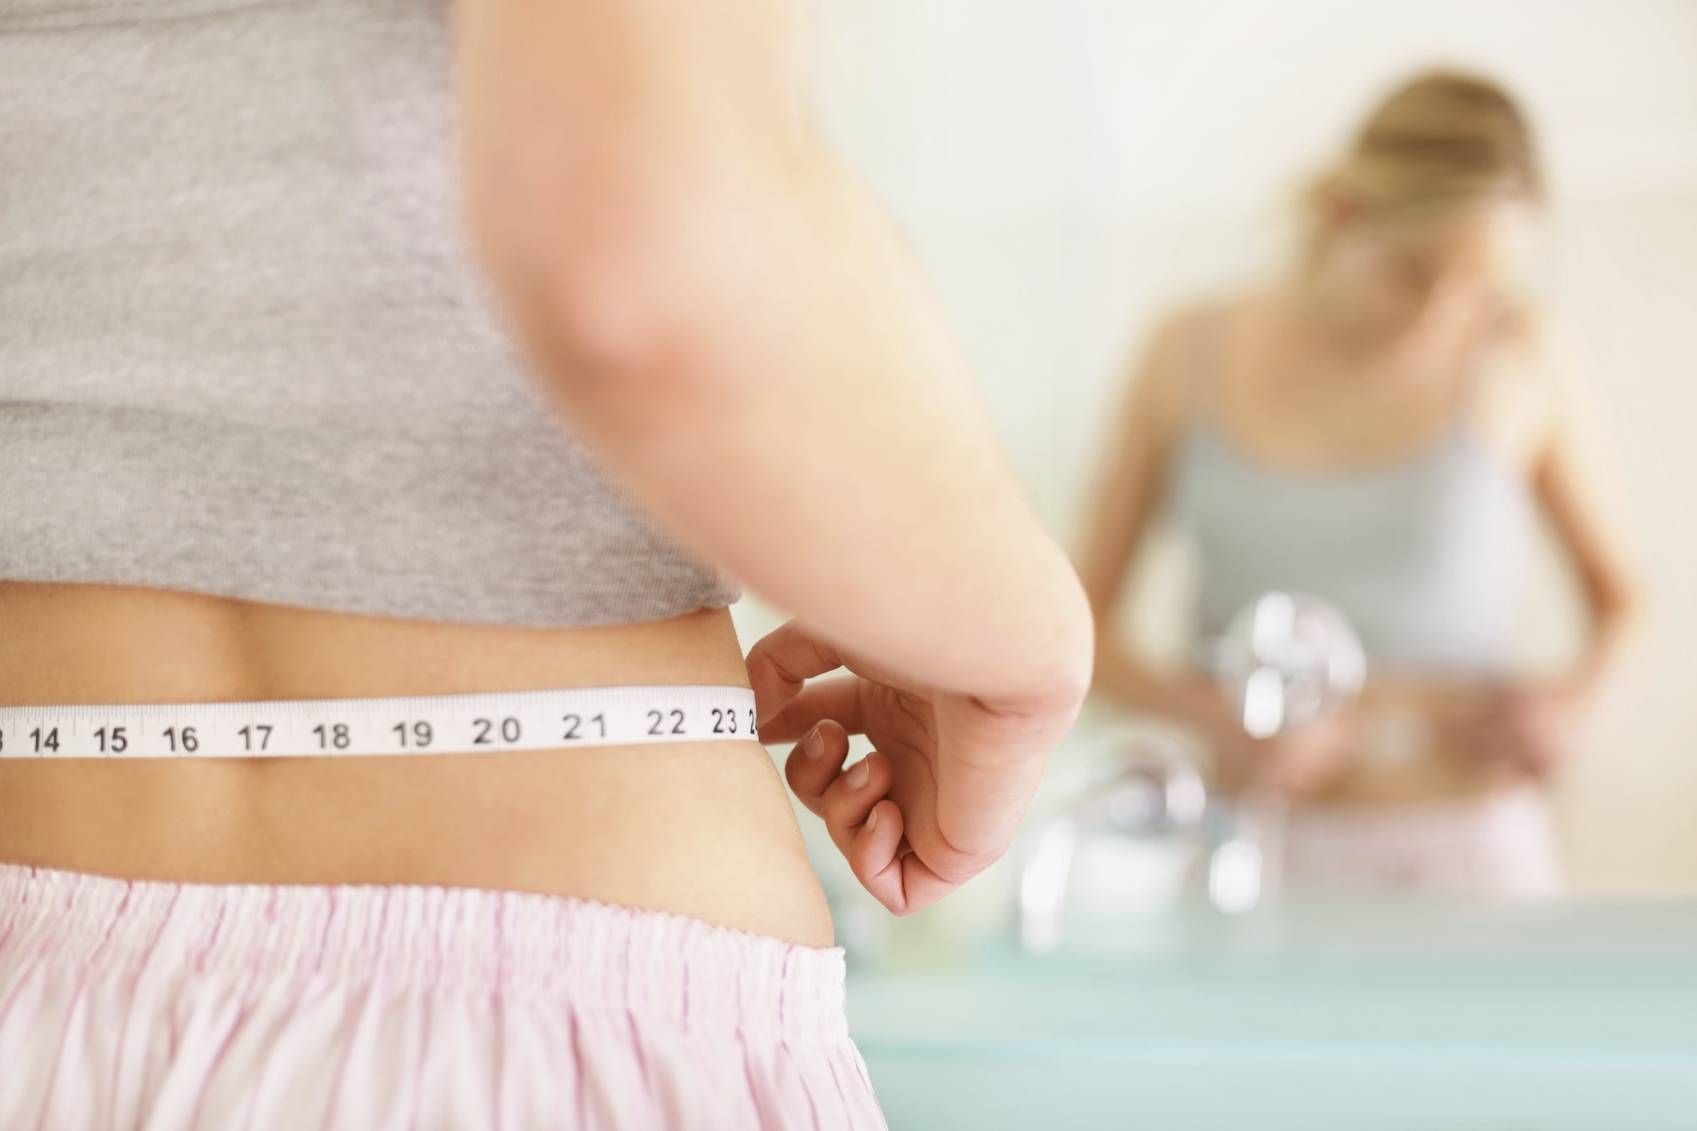 Как похудение может спровоцировать внезапную смерть